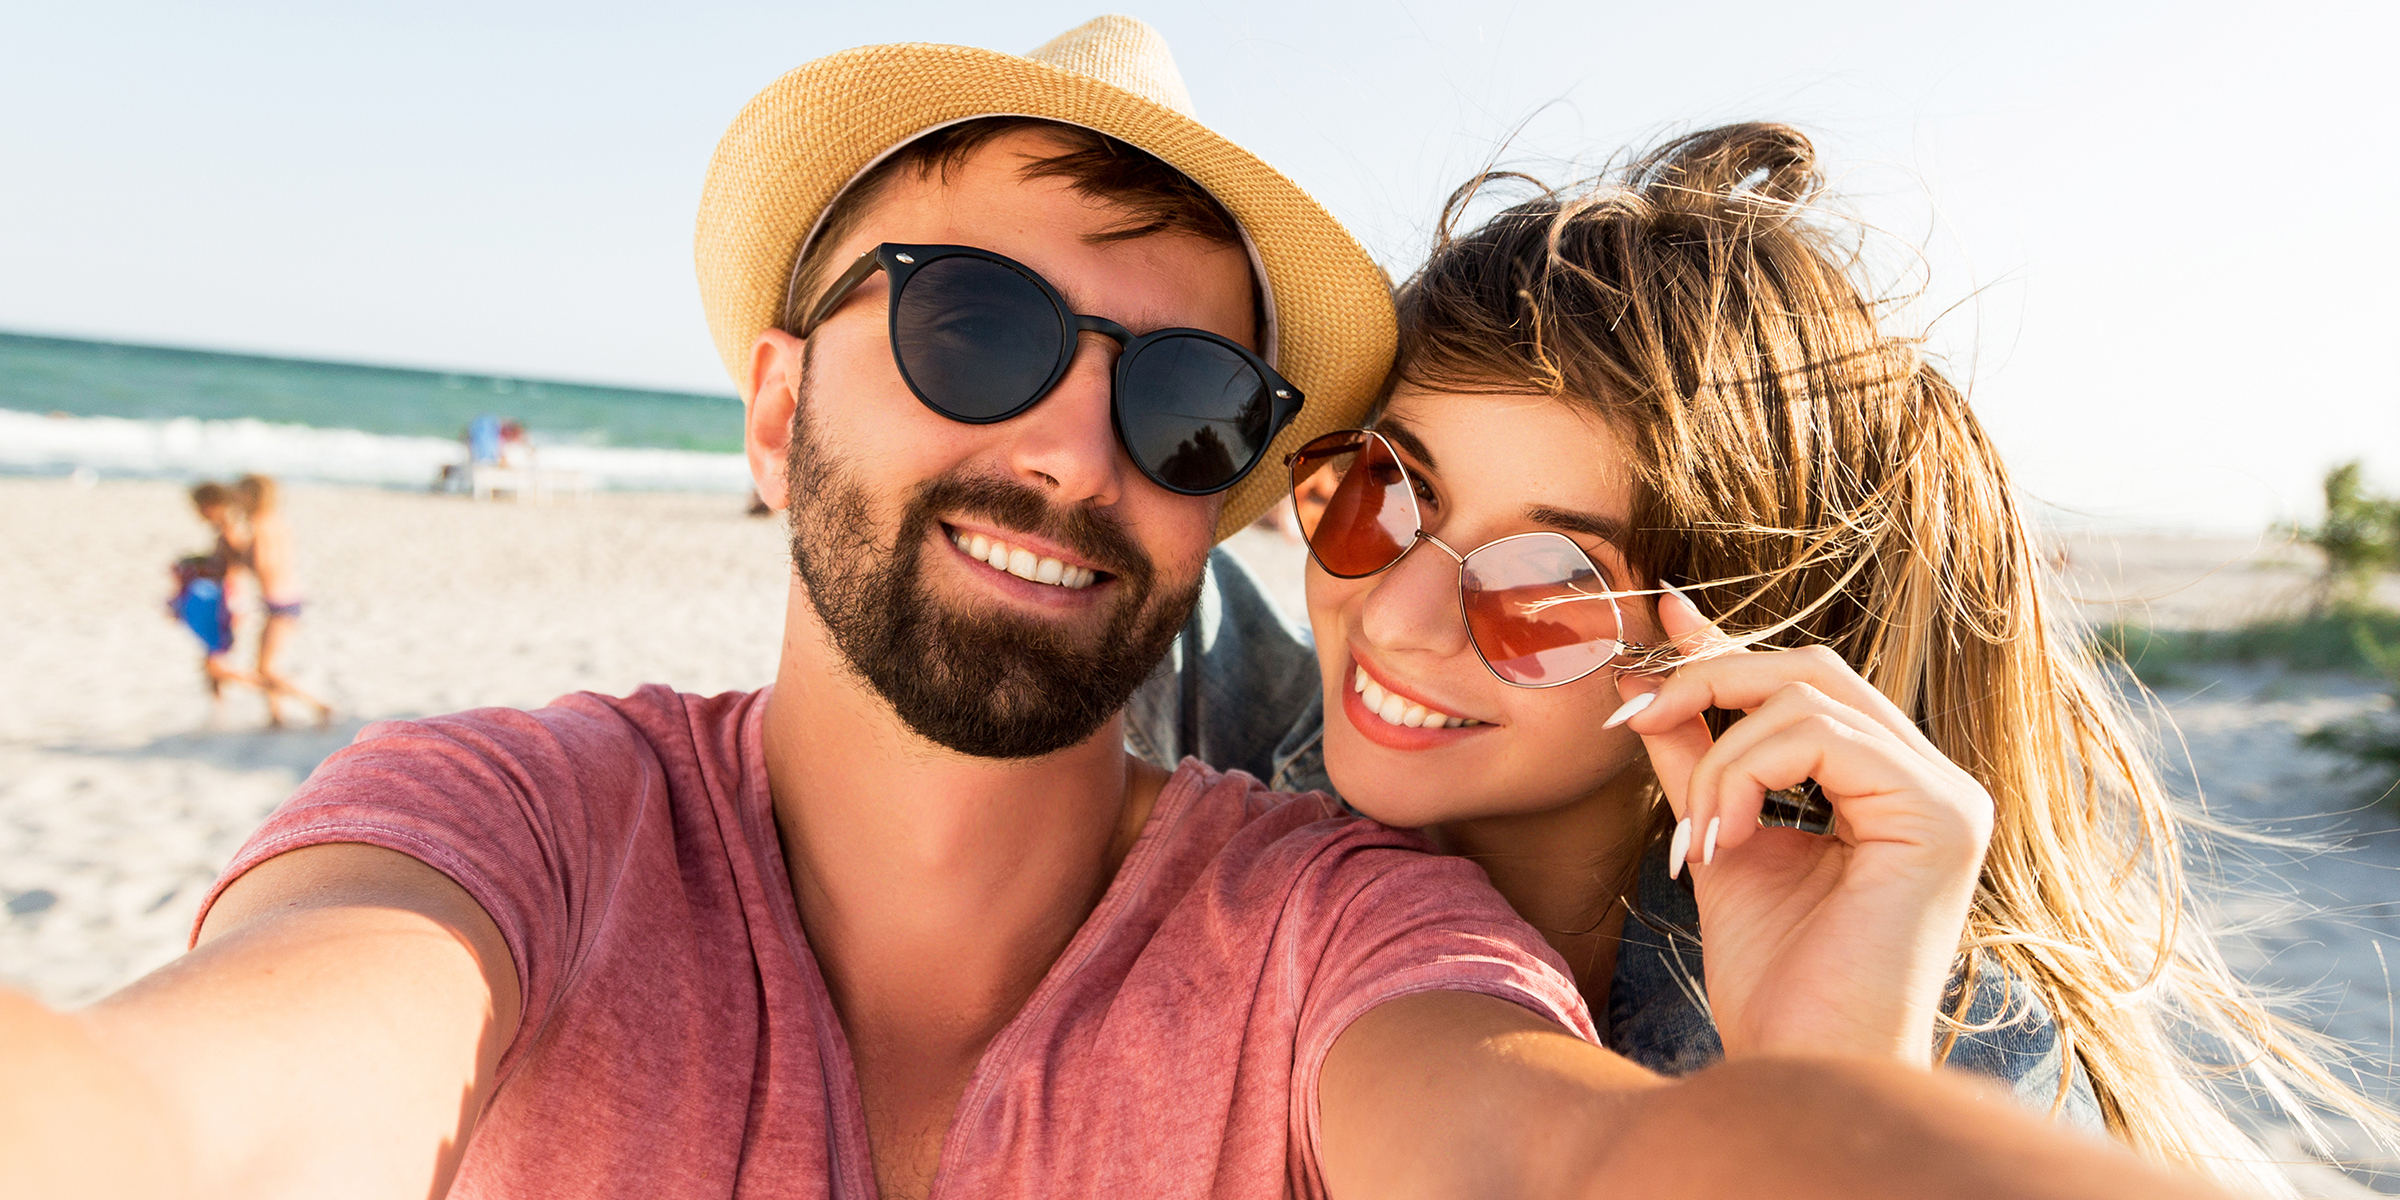 Ein Paar am Strand | Quelle: Shutterstock